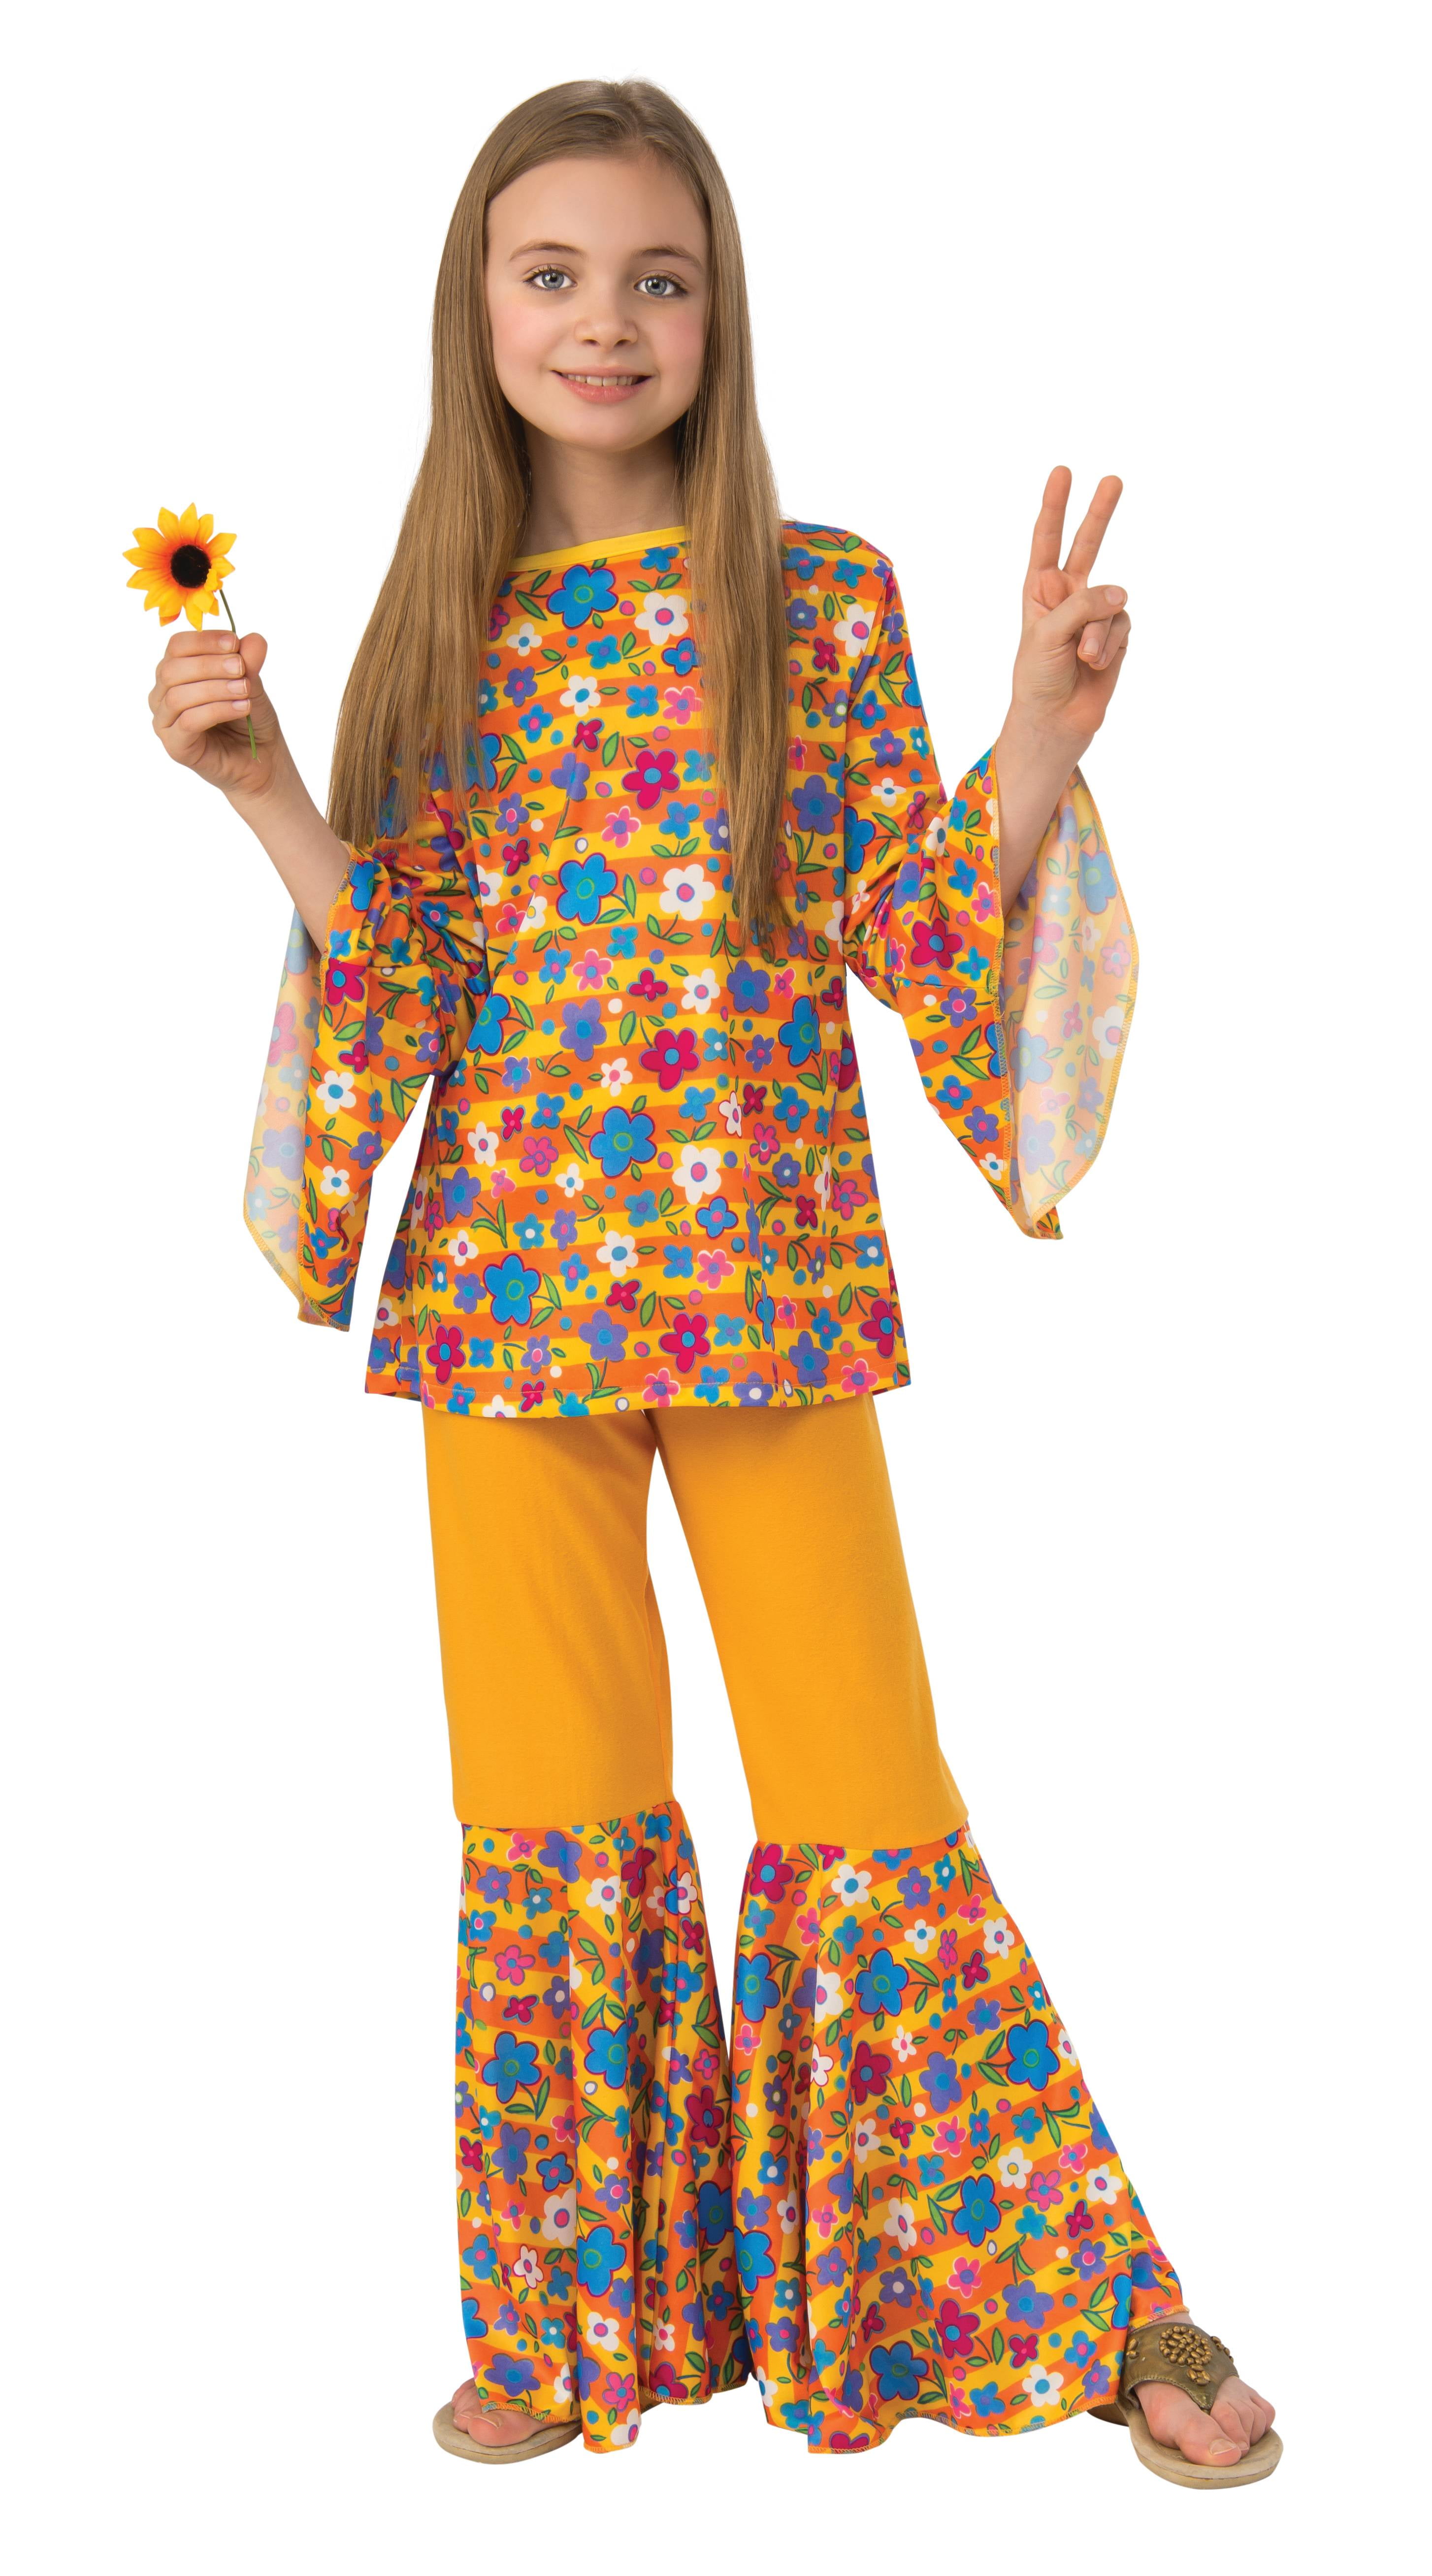 Generation Hippie Love Child Girls Halloween Costume 1970s Flower Power SM 4-6 